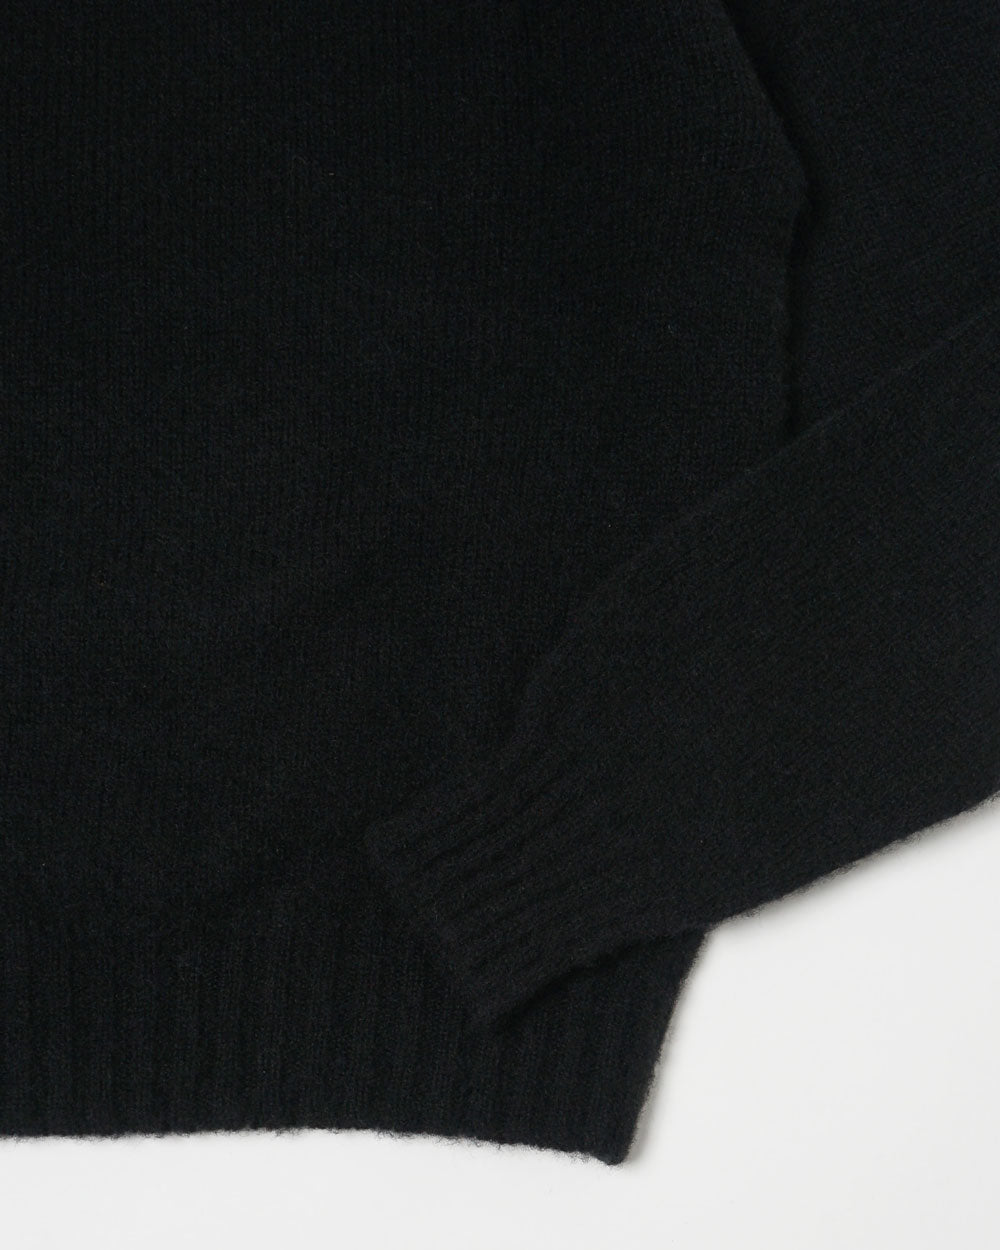 Brushed Shetland Sweater Crew Neck / Black